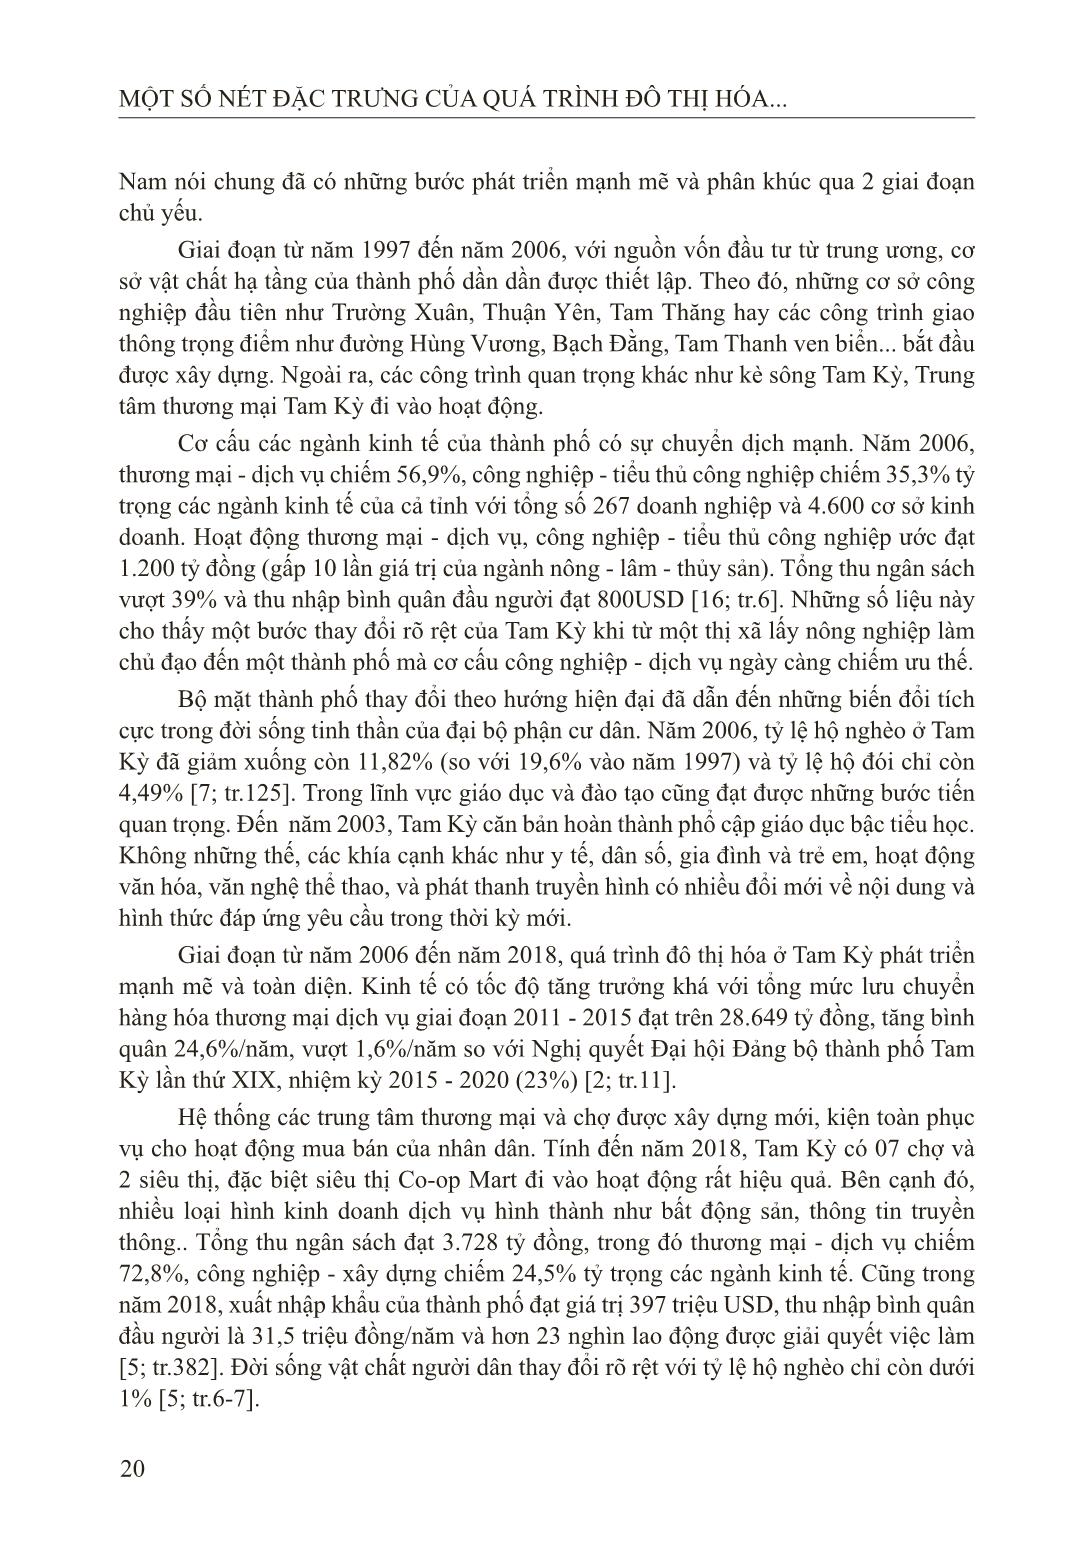 Một số nét đặc trưng của quá trình đô thị hóa tại thành phố Tam Kỳ tỉnh Quảng Nam (1997- 2018) trang 2